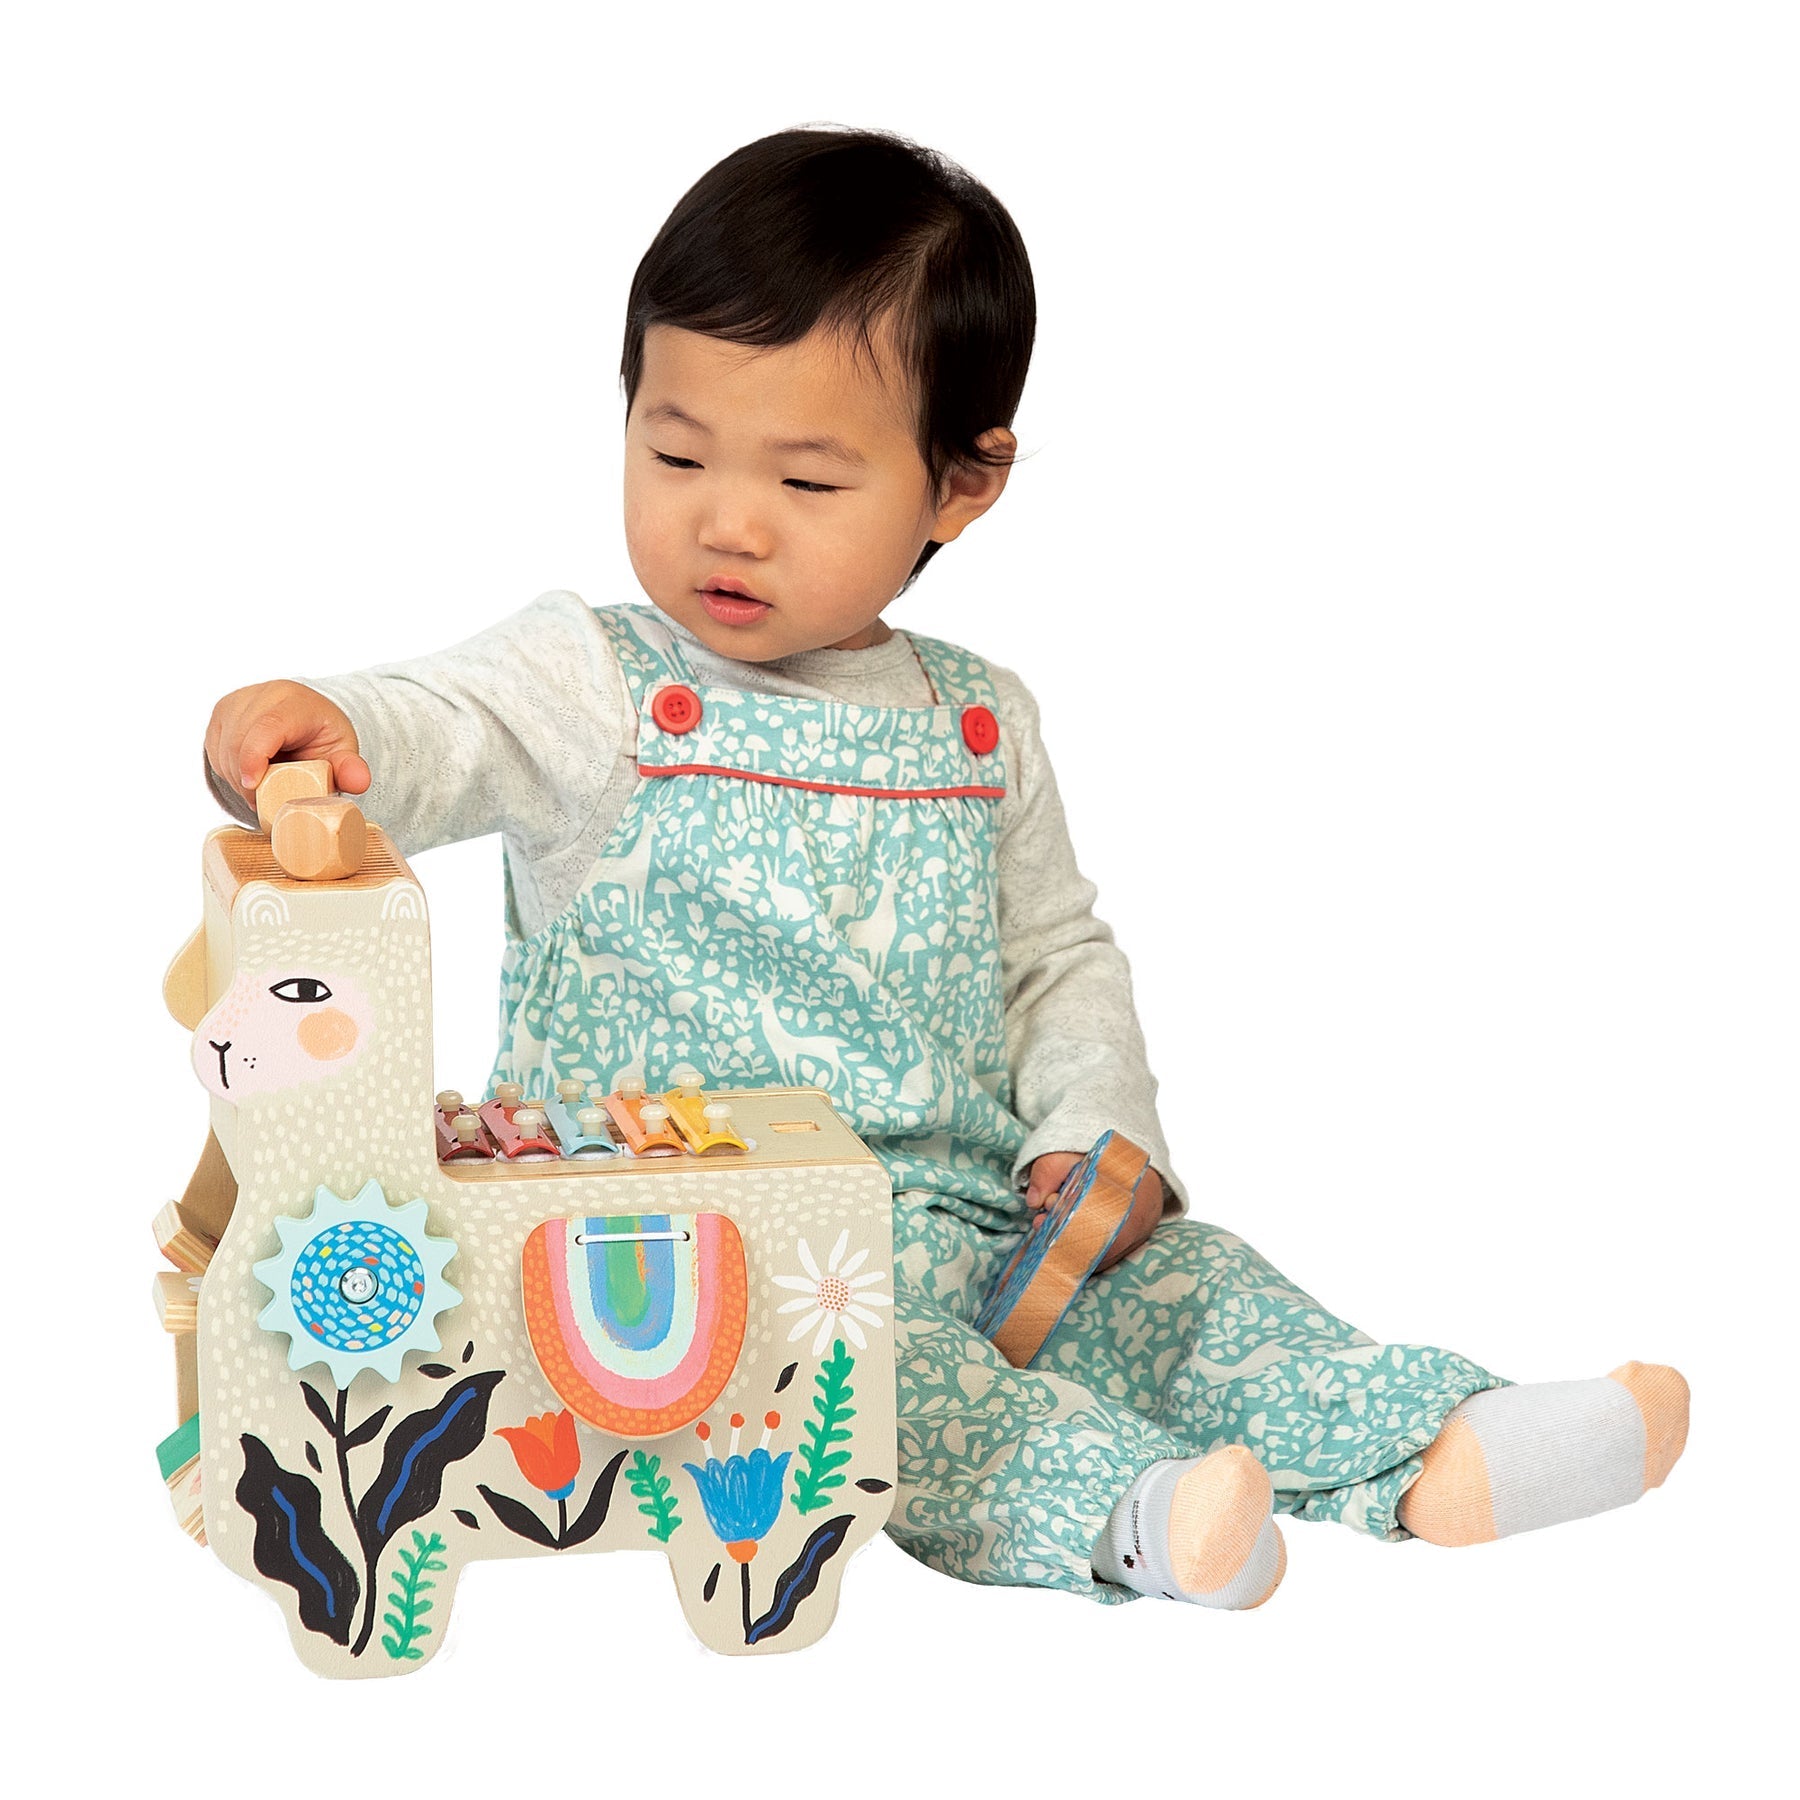 Manhattan Toy Lili Llama Musical Wooden Toy - ANB Baby -011964494460$50 - $75